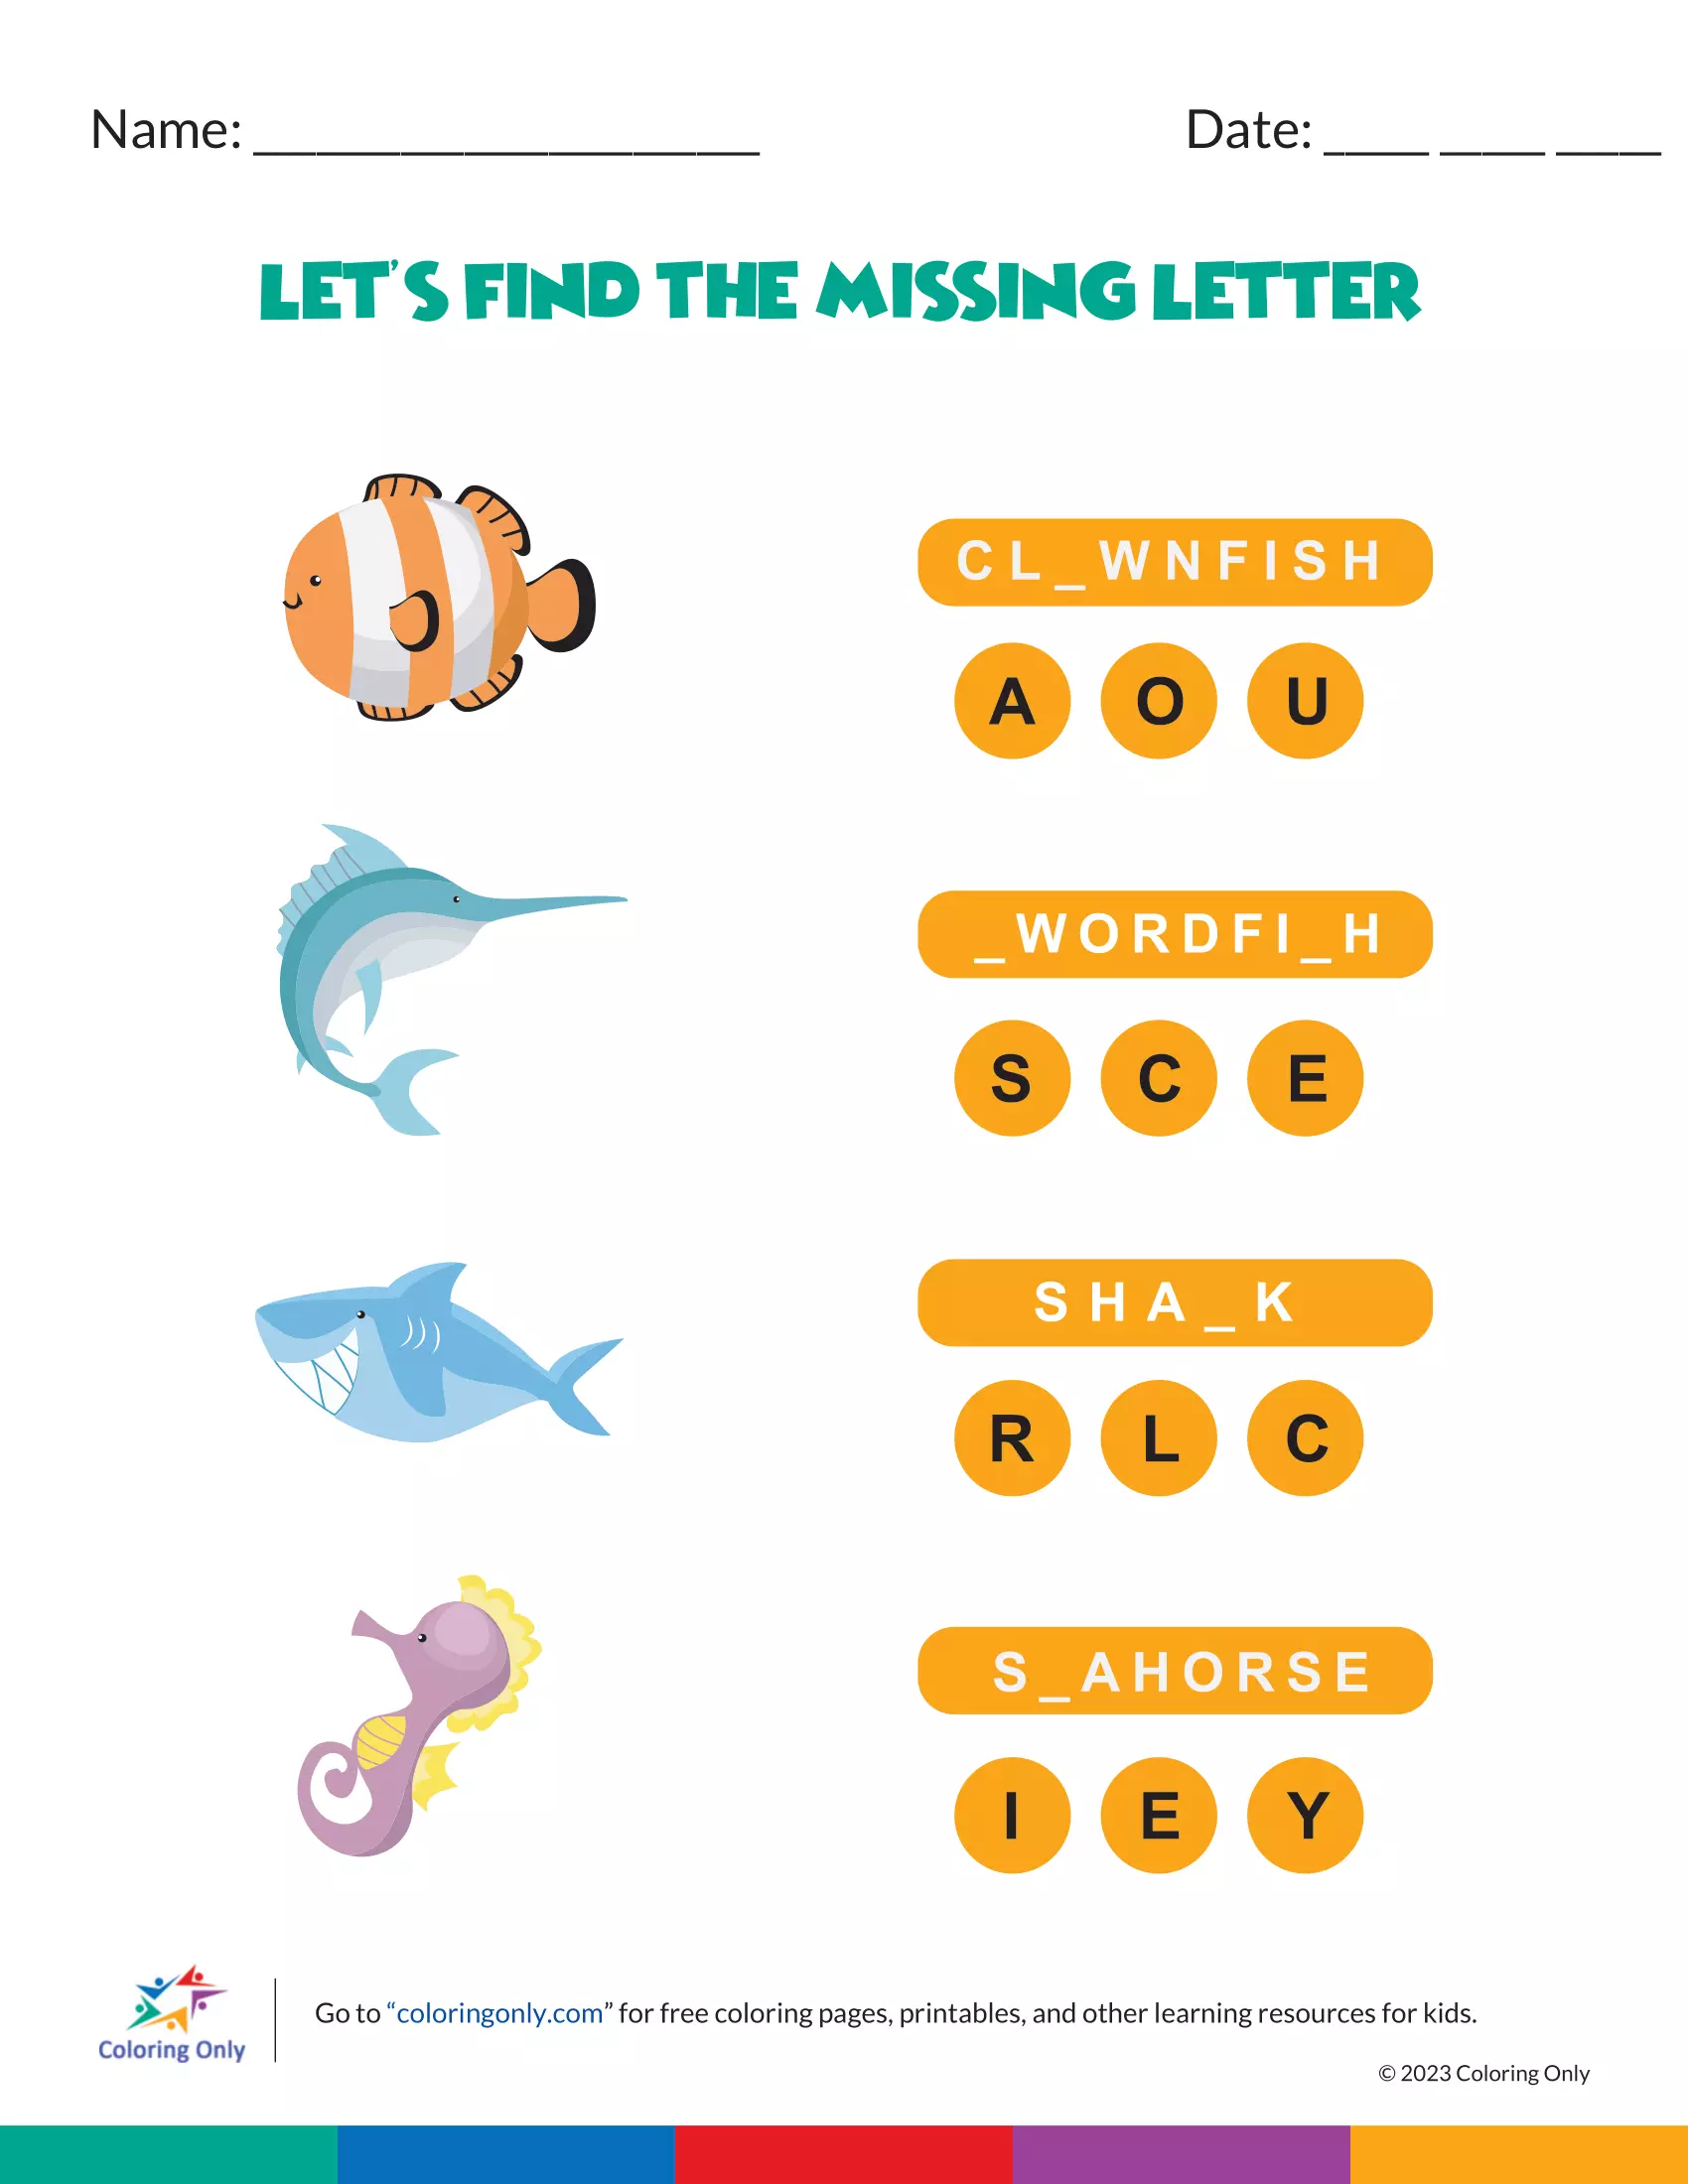 Let’s Find the Missing Letter